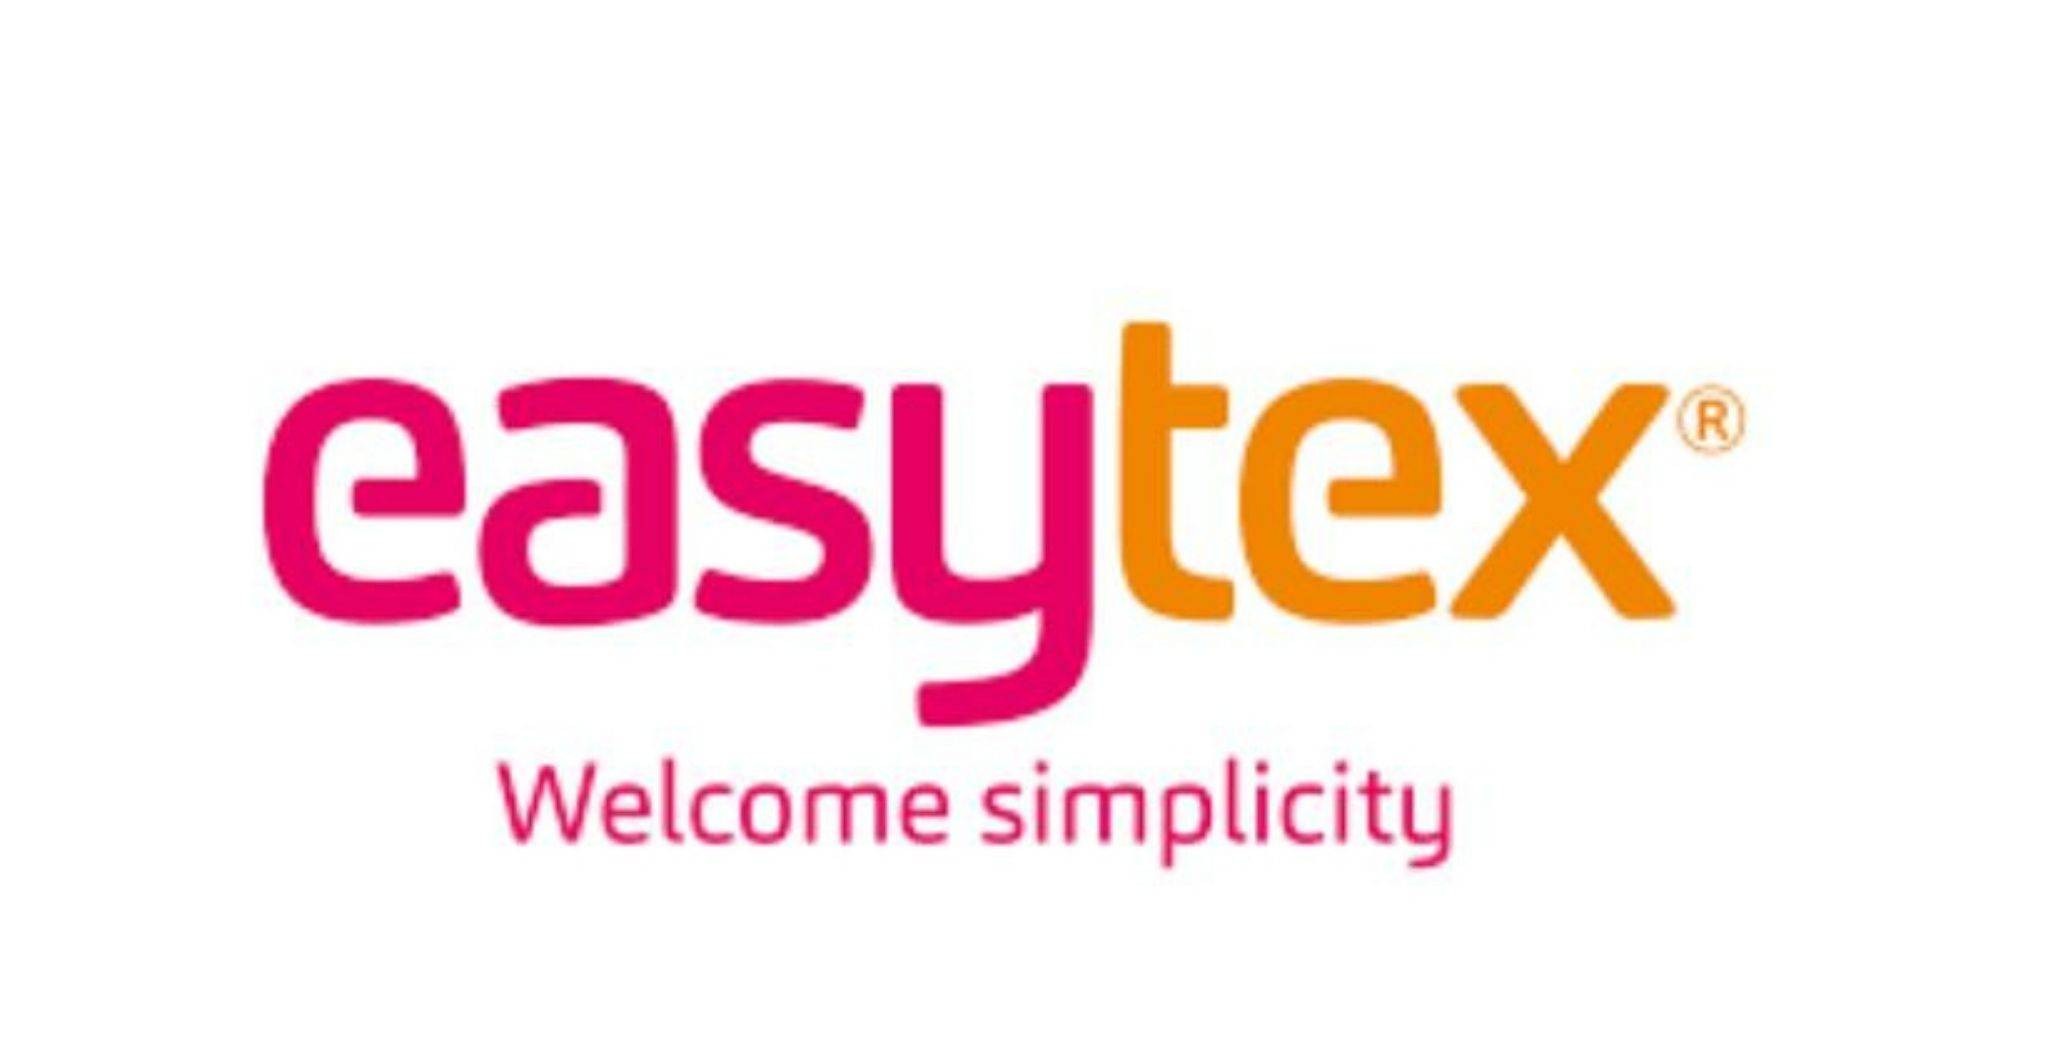 Easytex